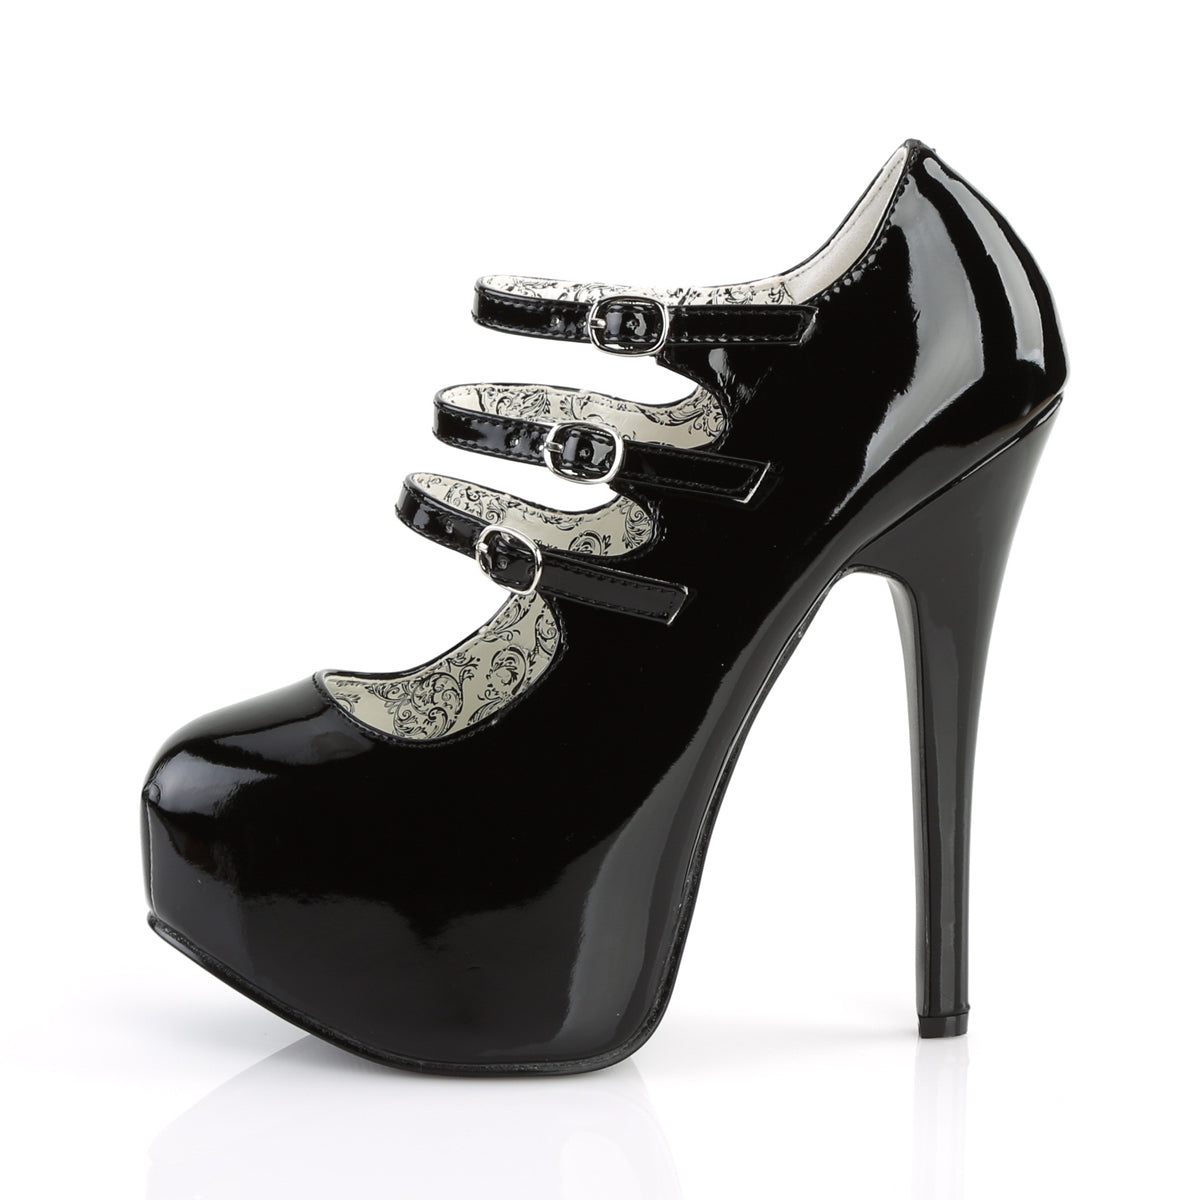 TEEZE-05 Bordello Heels Black Patent Shoes [Moulin Rouge Shoes]